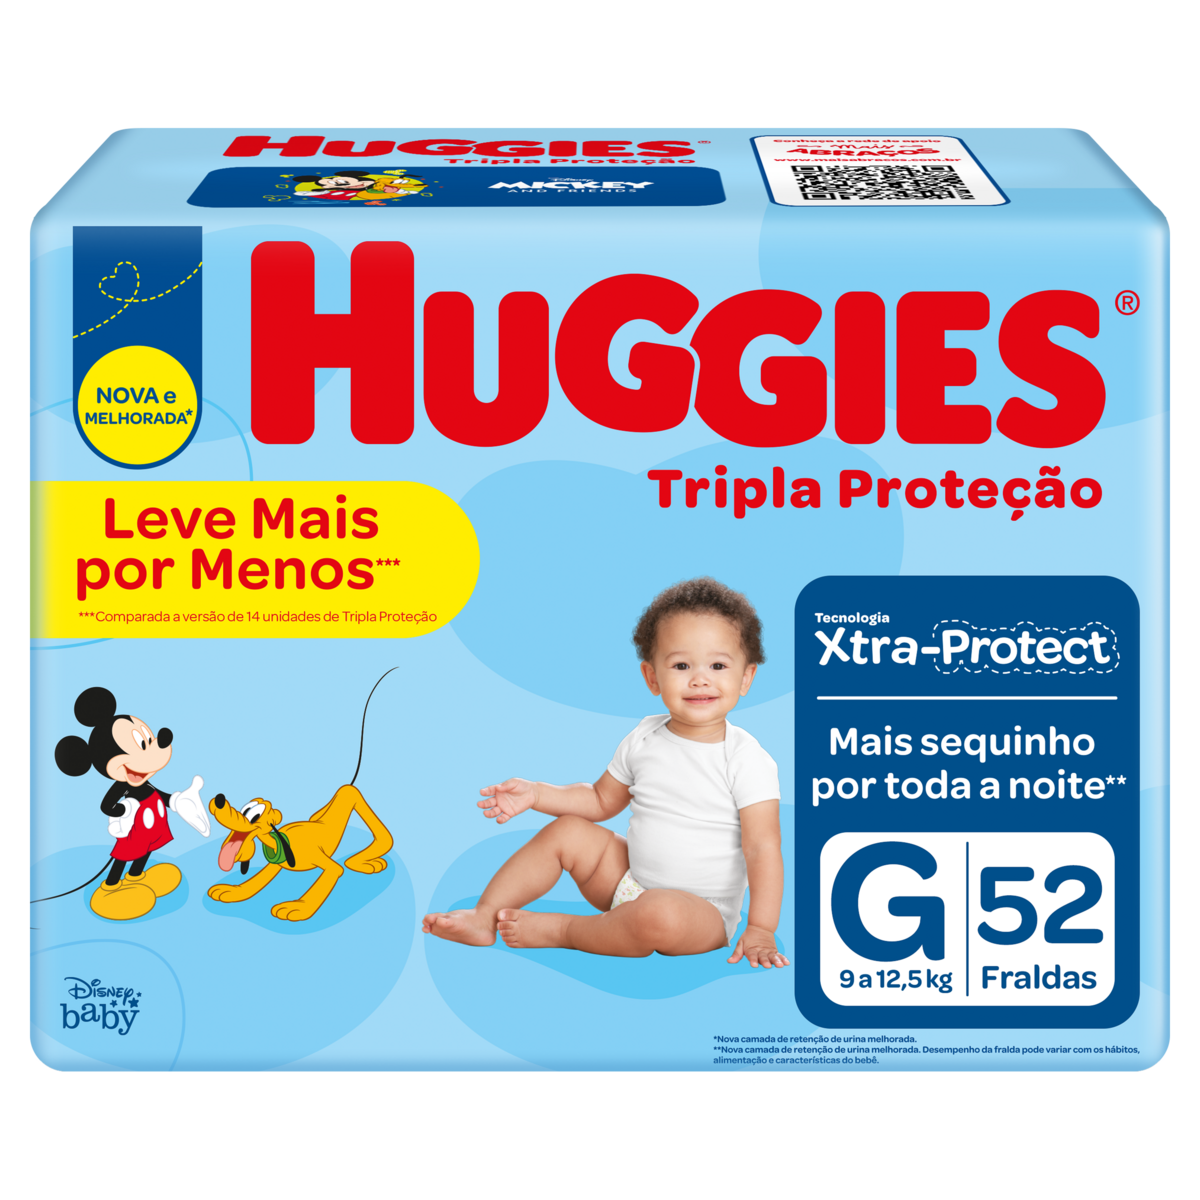 7896007553150 - FRALDA DESCARTÁVEL INFANTIL DISNEY BABY HUGGIES TRIPLA PROTEÇÃO G PACOTE 52 UNIDADES LEVE MAIS PAGUE MENOS